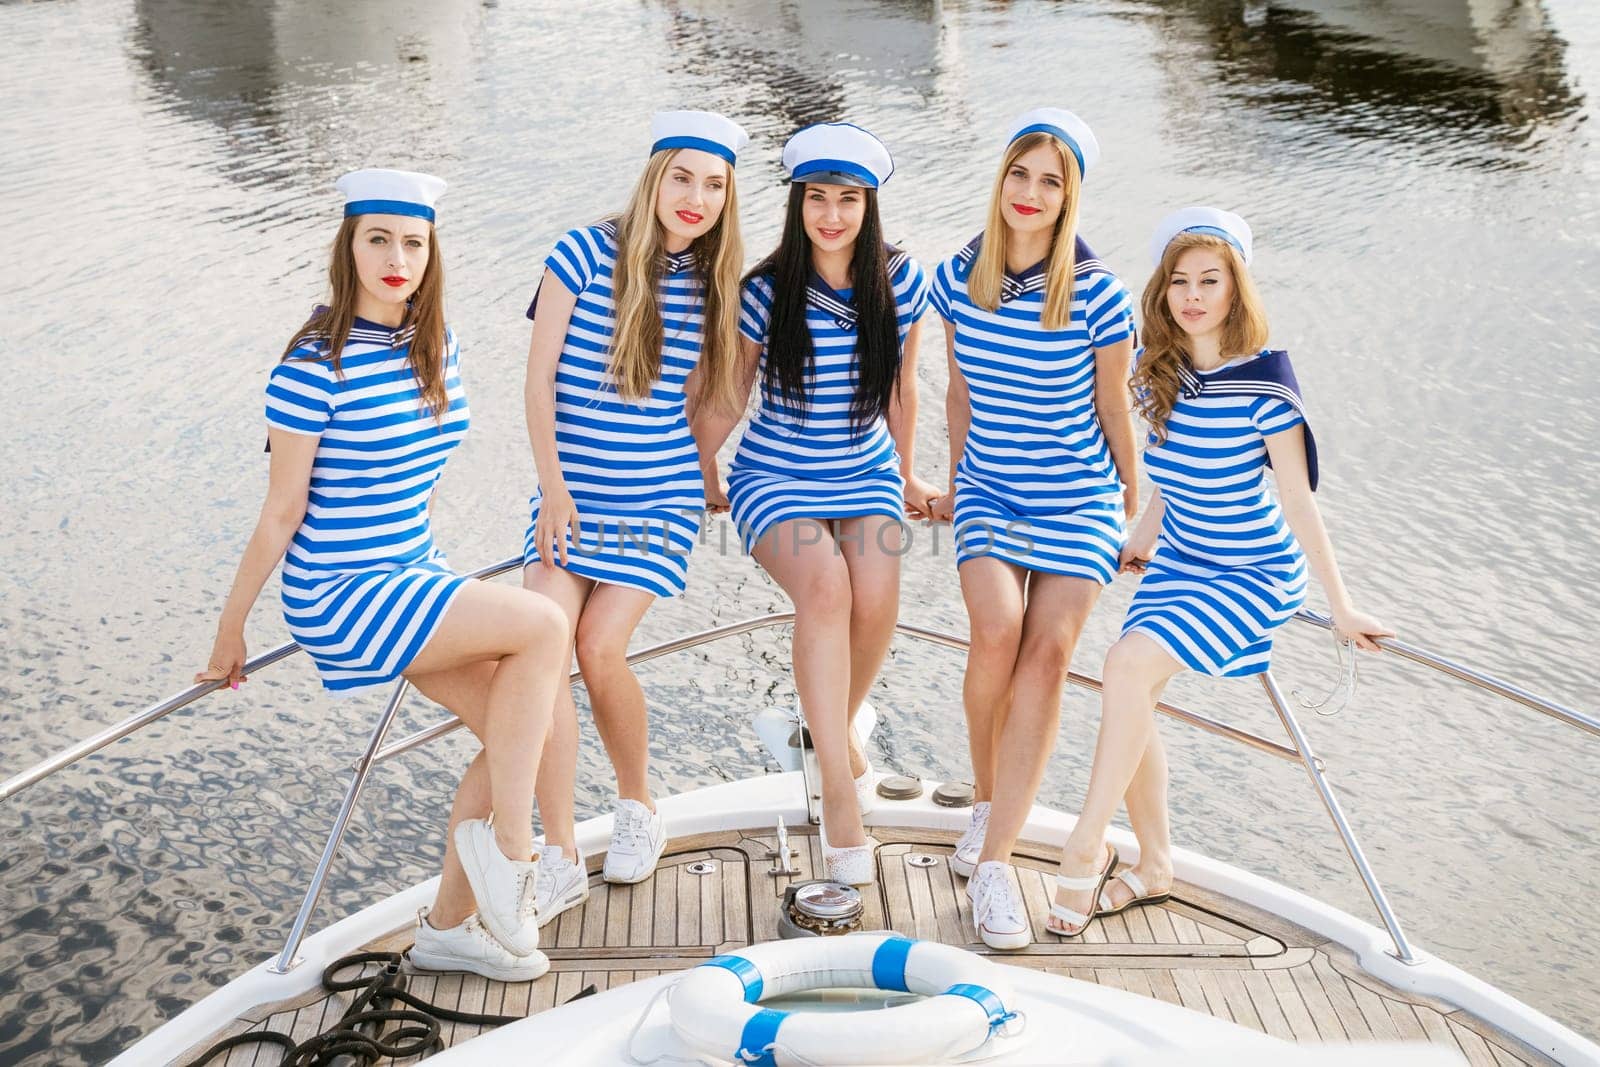 Whole girlfriends on a yacht in summer by EkaterinaPereslavtseva